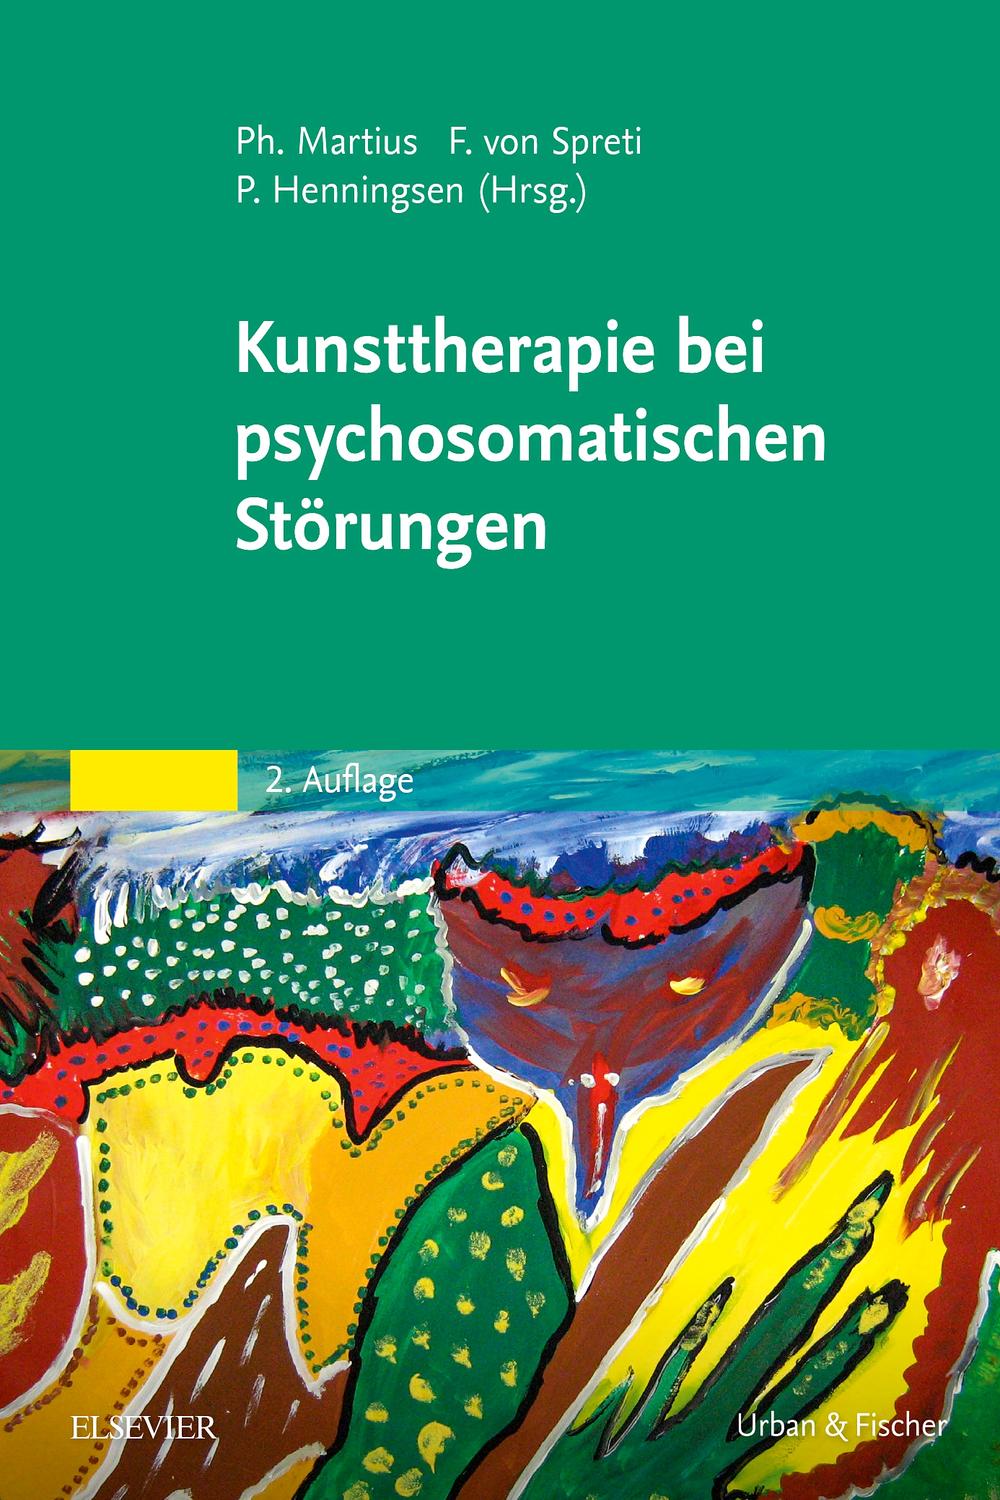 Kunsttherapie bei psychosomatischen Störungen - Philipp A. Martius, Flora Gräfin von Spreti, Peter Henningsen